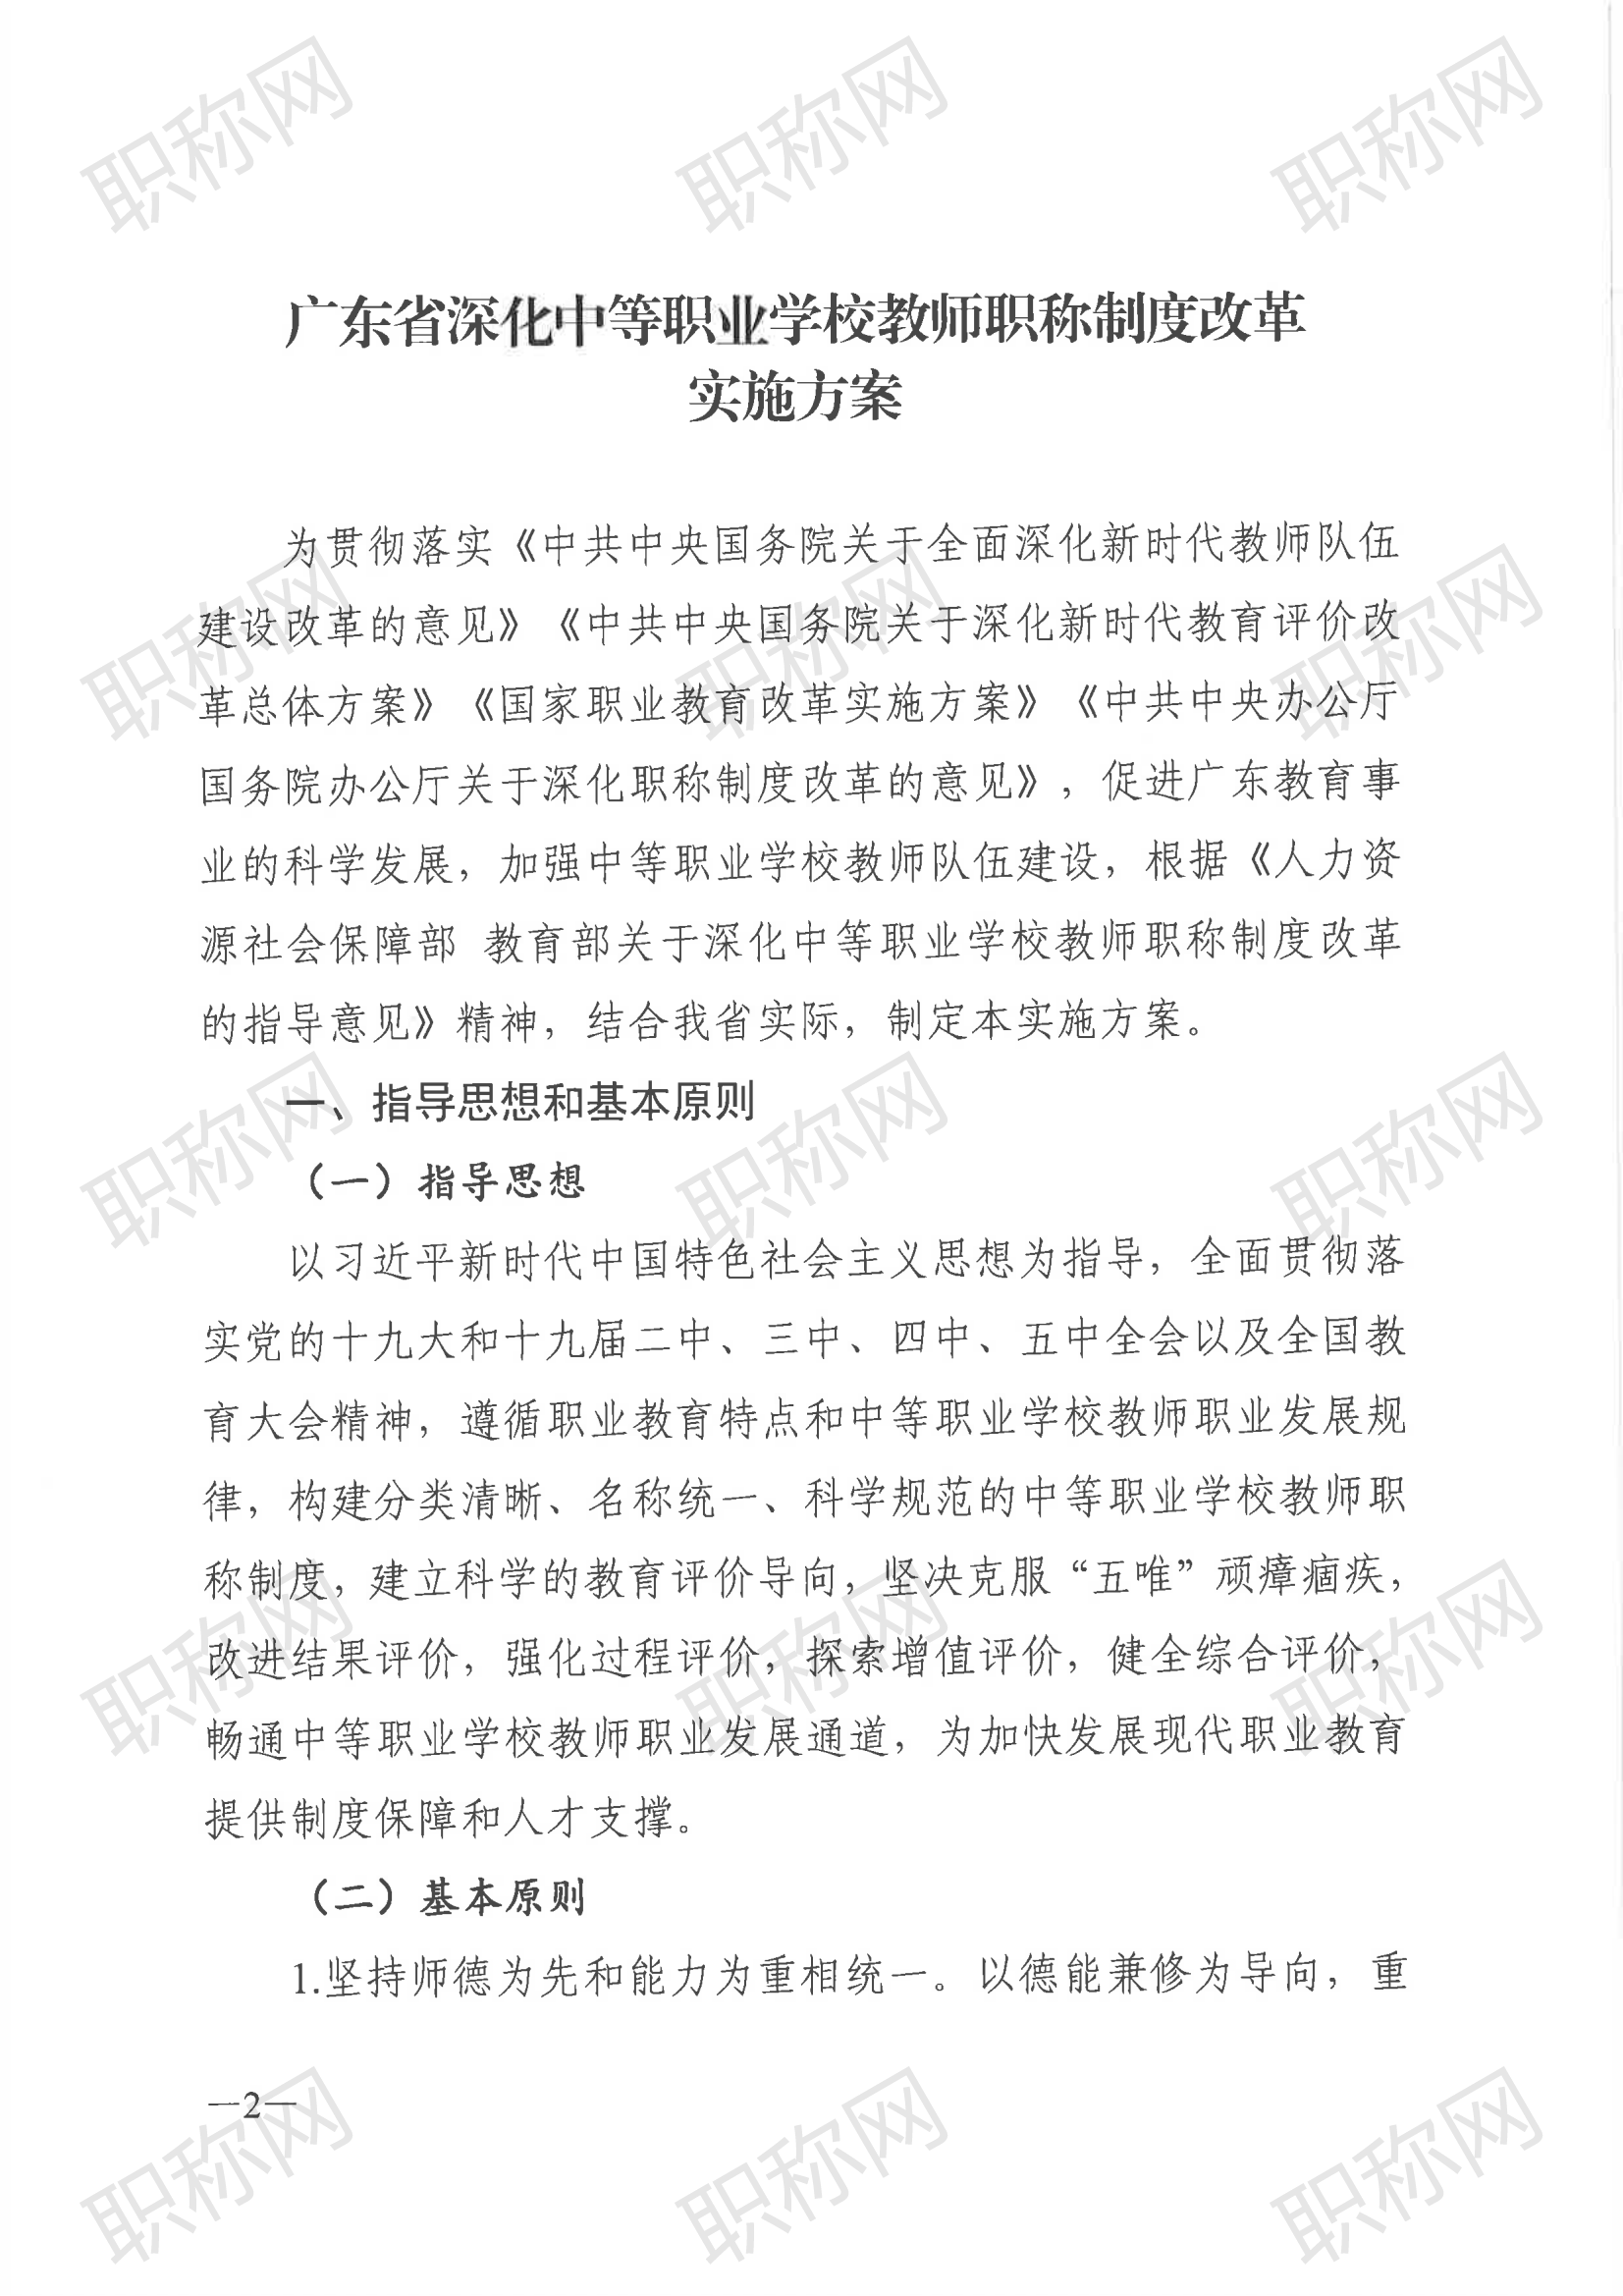 广东省深化中等职业学校教师职称制度改革实施方案》的通知_01.png